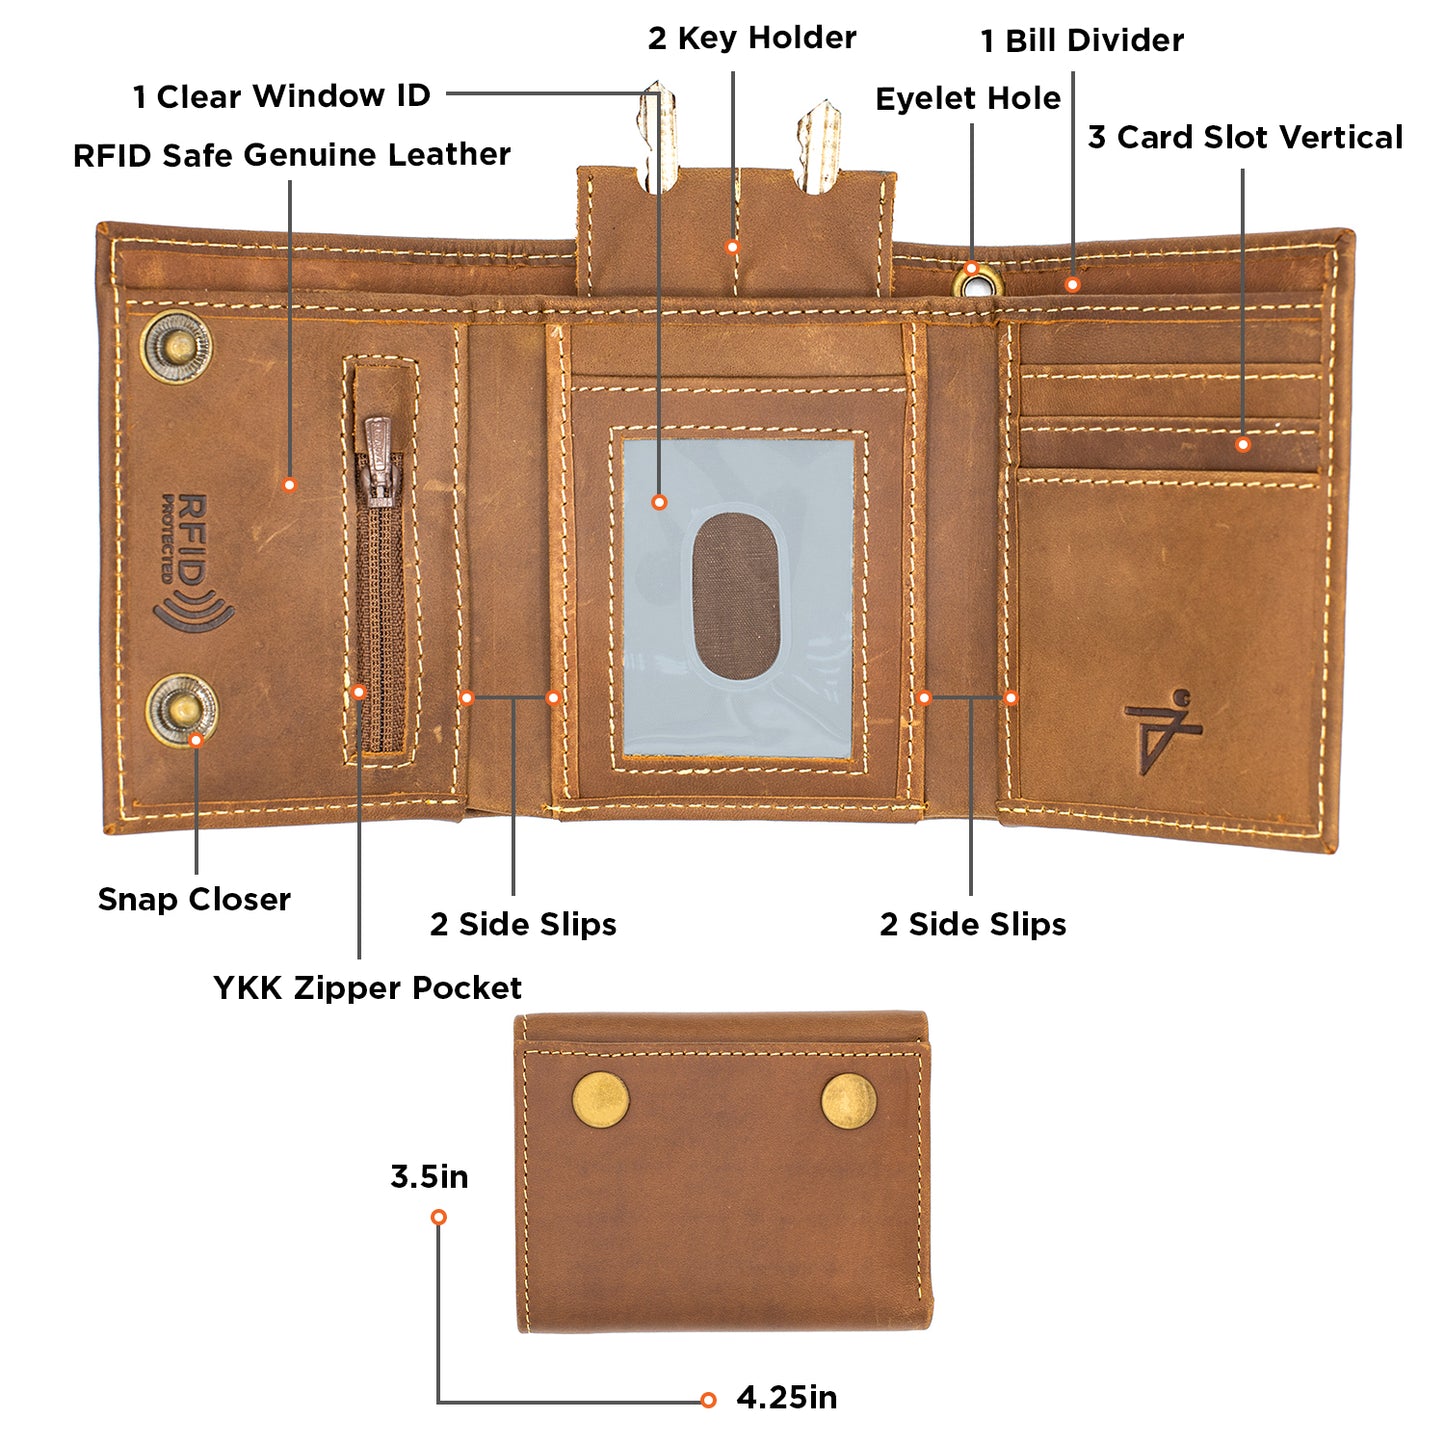 RFID Safe Biker’s Leather Tri-Fold Wallet Model : J110